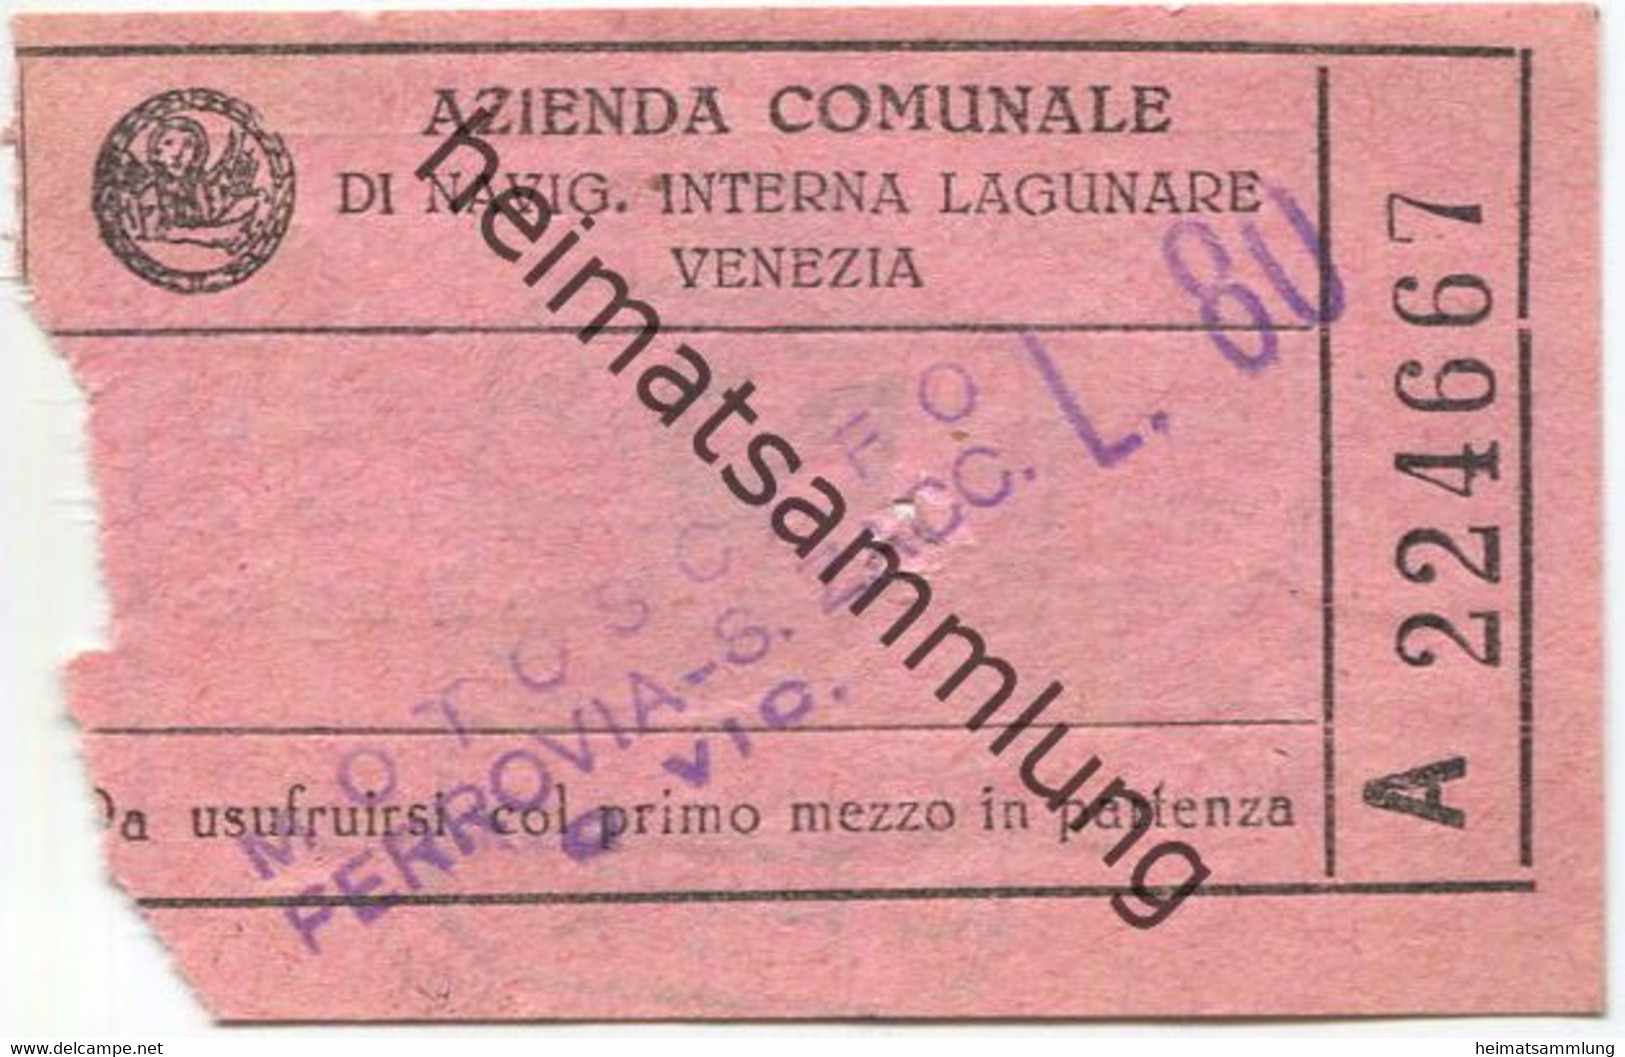 Italien - Azienda Comunale Di Navig. Interna Lagunare Venezia - Motoscafo Ferrovia-S.Zacc. - Fahrschein L.80 - Europe